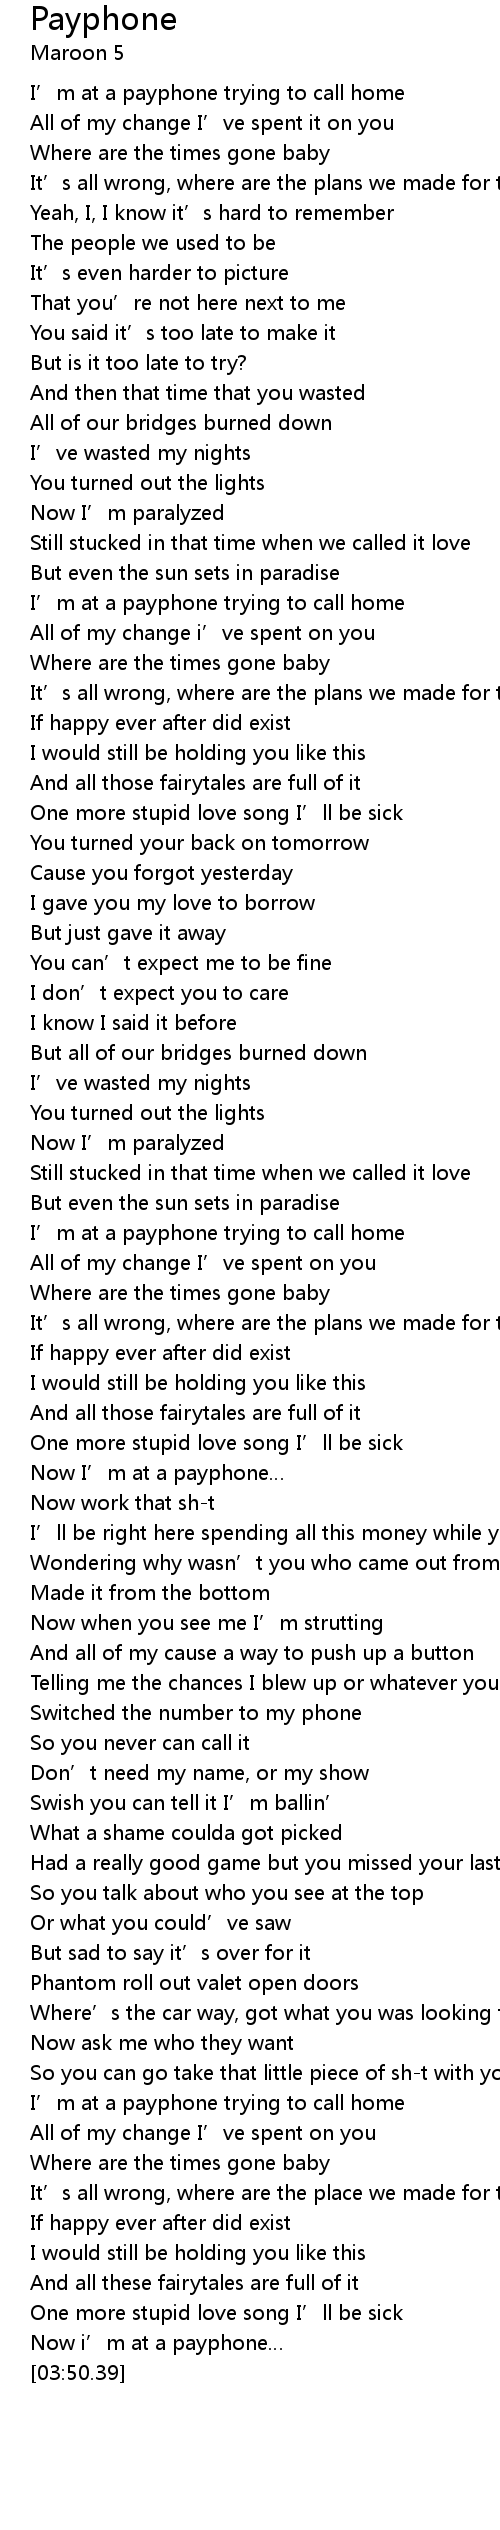 Payphone maroon 5 lyrics